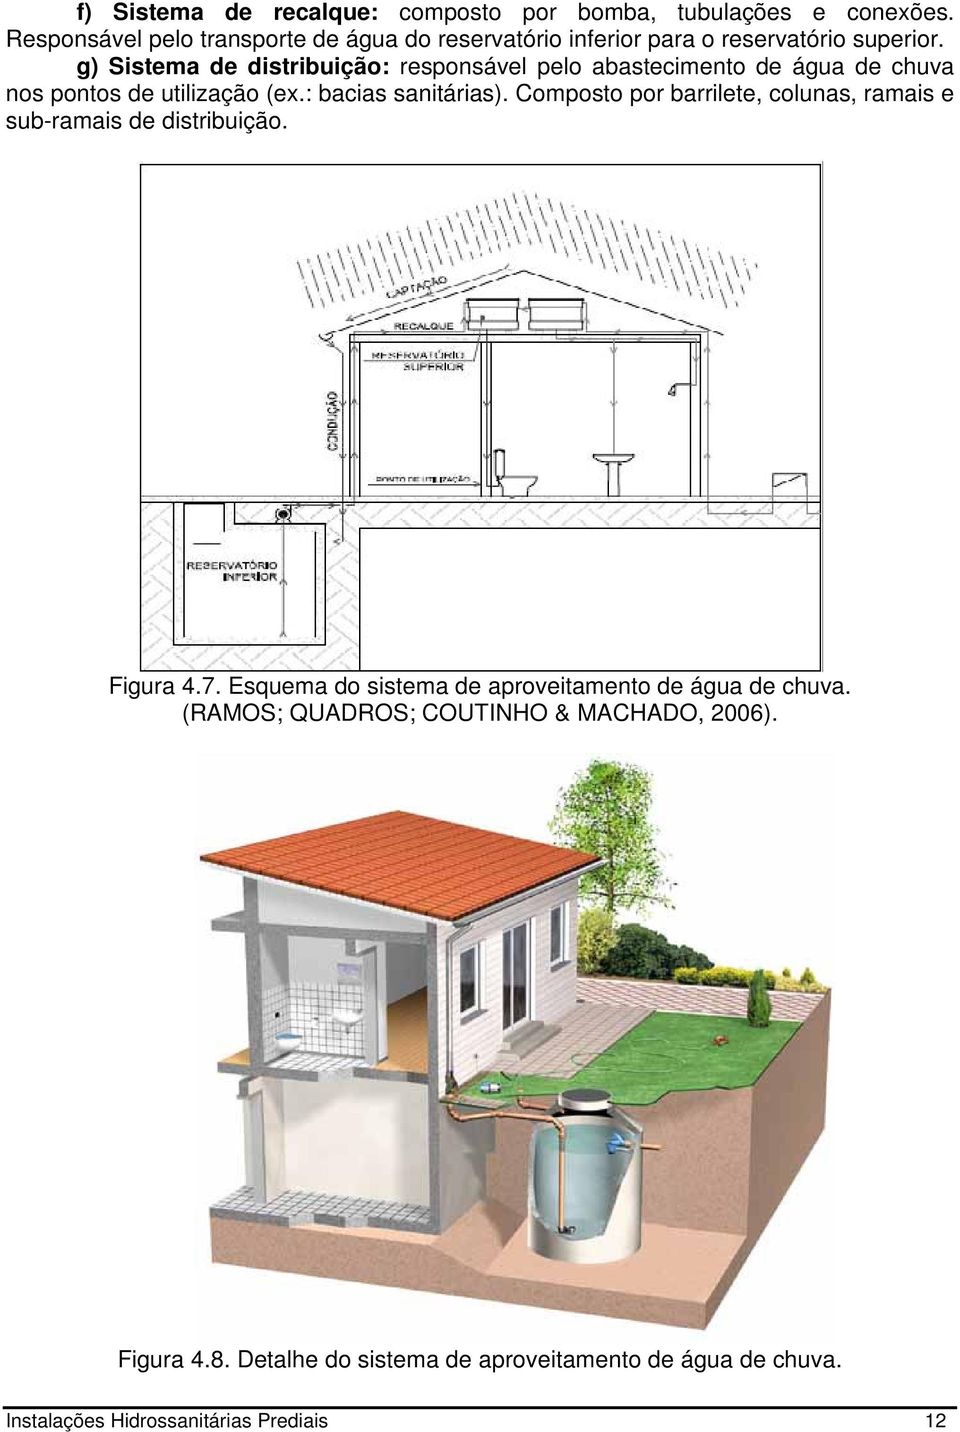 g) Sistema de distribuição: responsável pelo abastecimento de água de chuva nos pontos de utilização (ex.: bacias sanitárias).